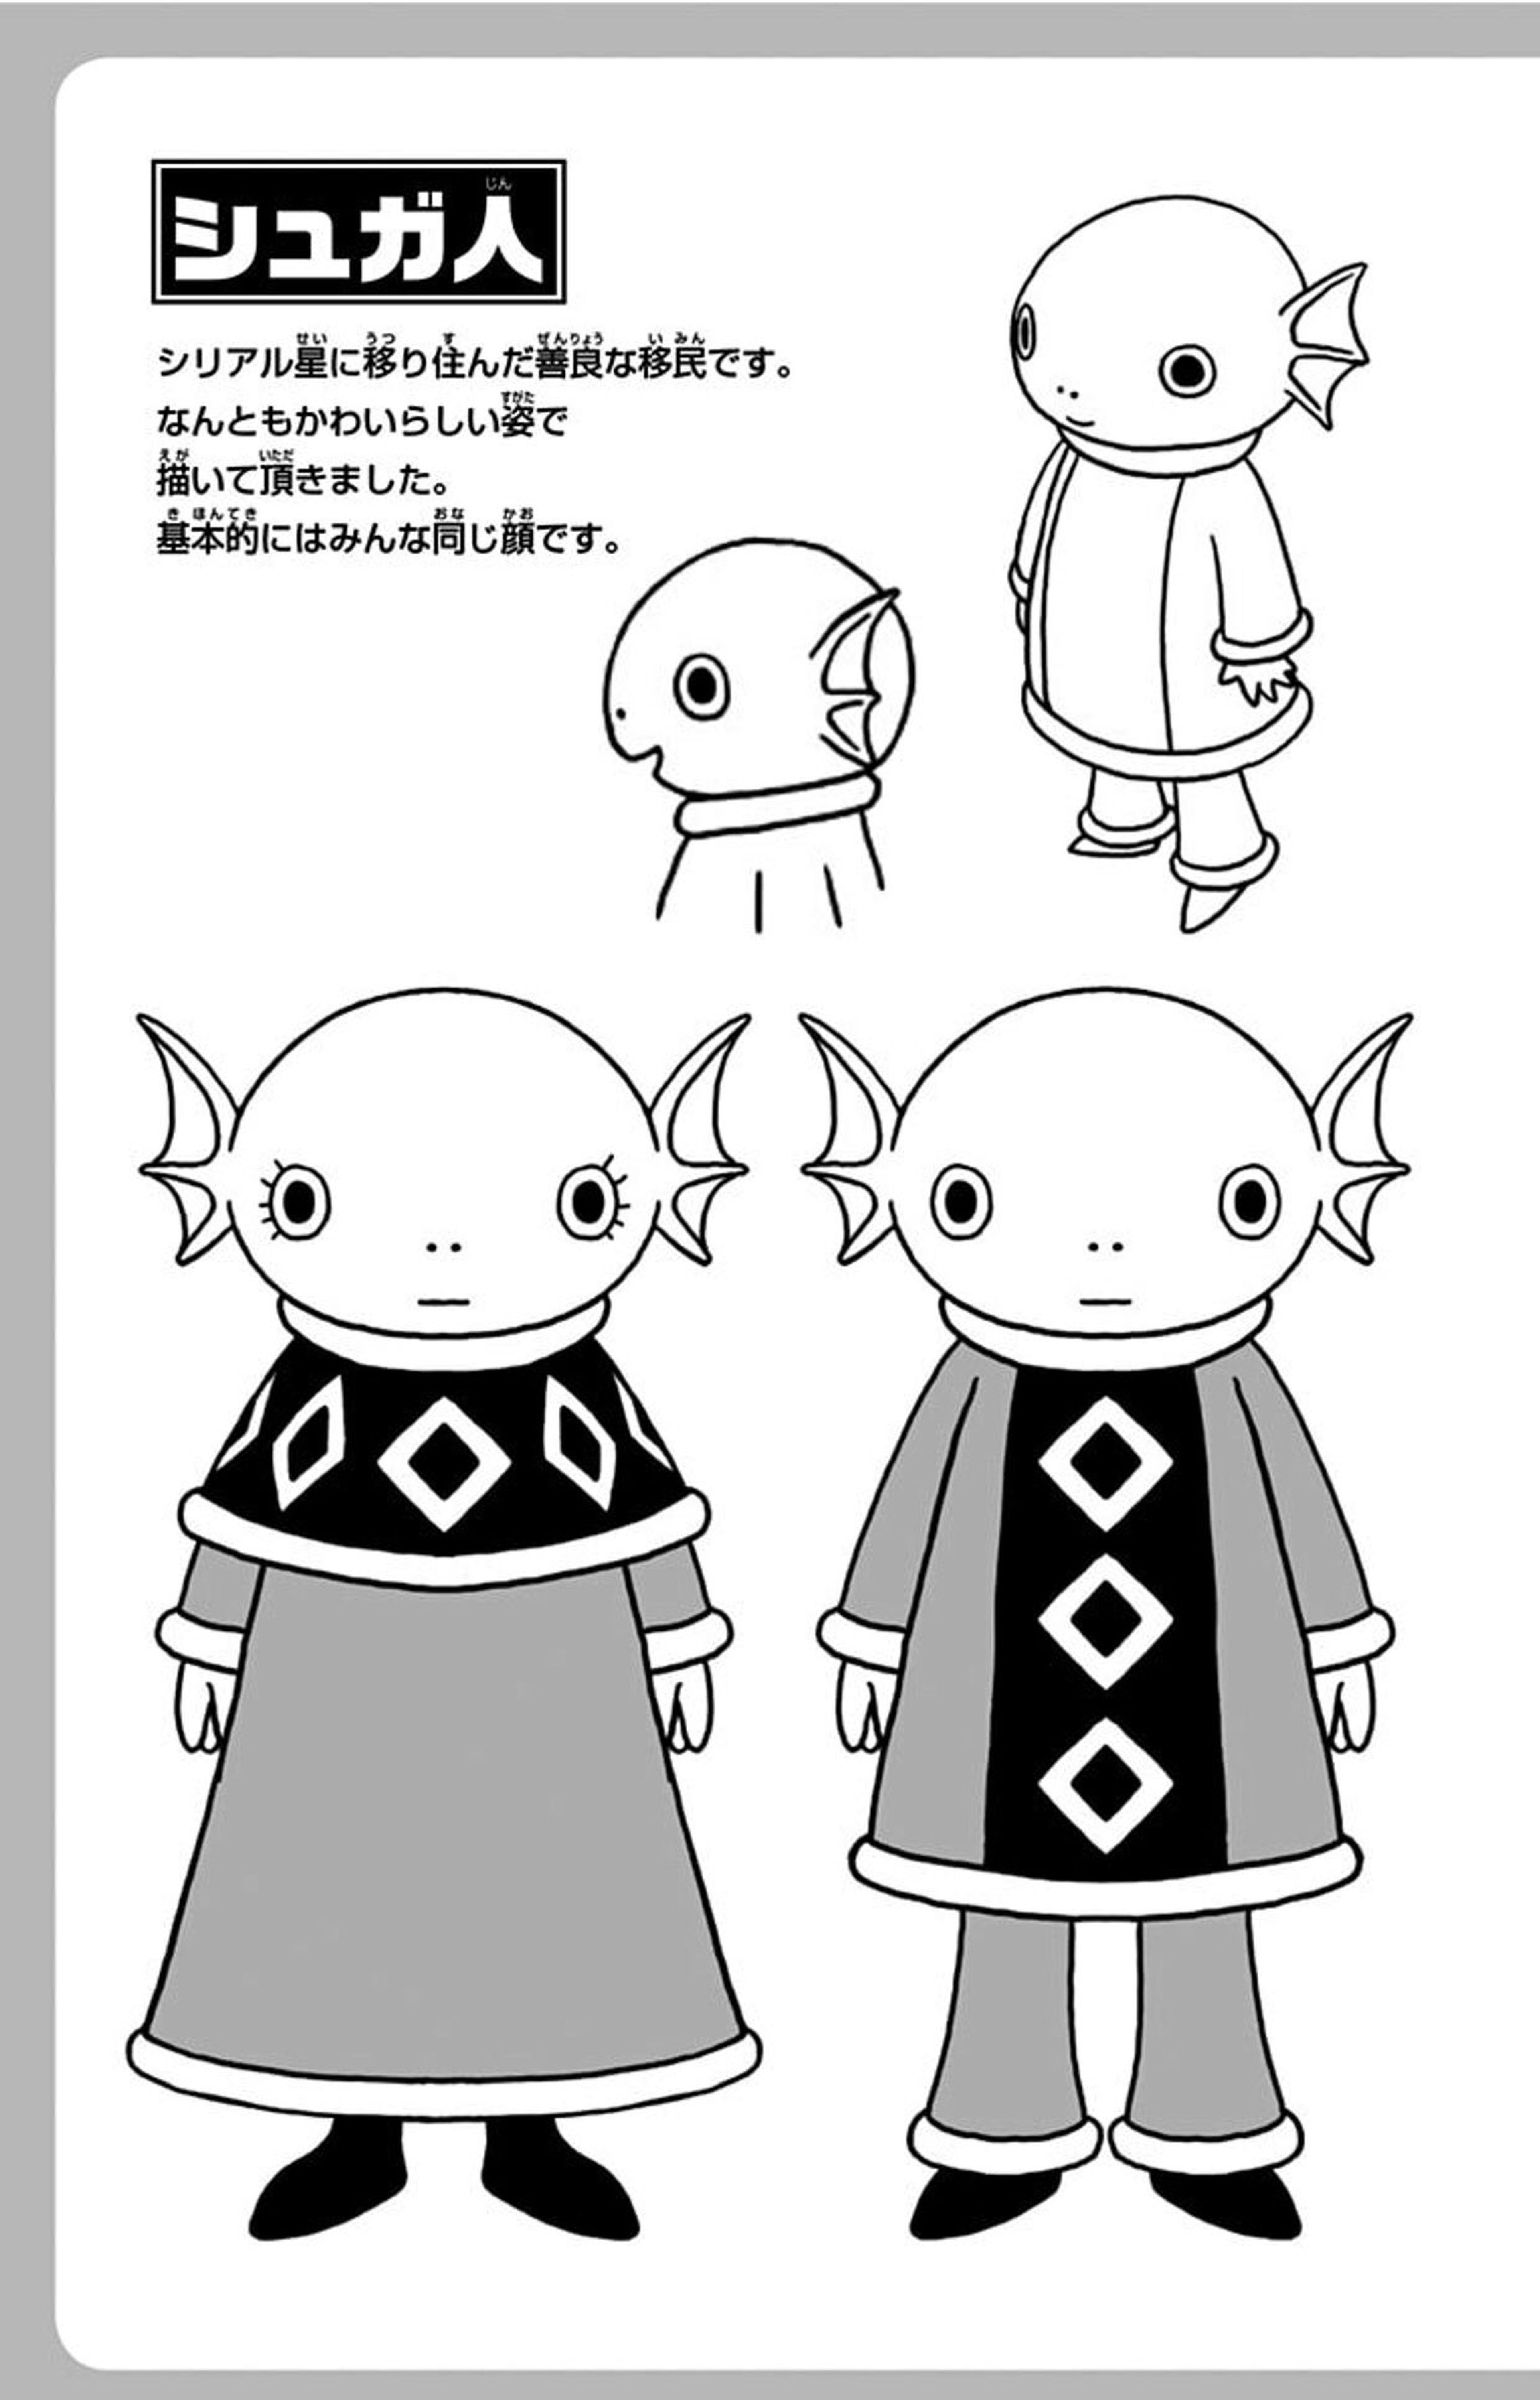 Dragon Ball Super - Akira Toriyama diseña la raza de estos personajes para la nueva saga de la serie